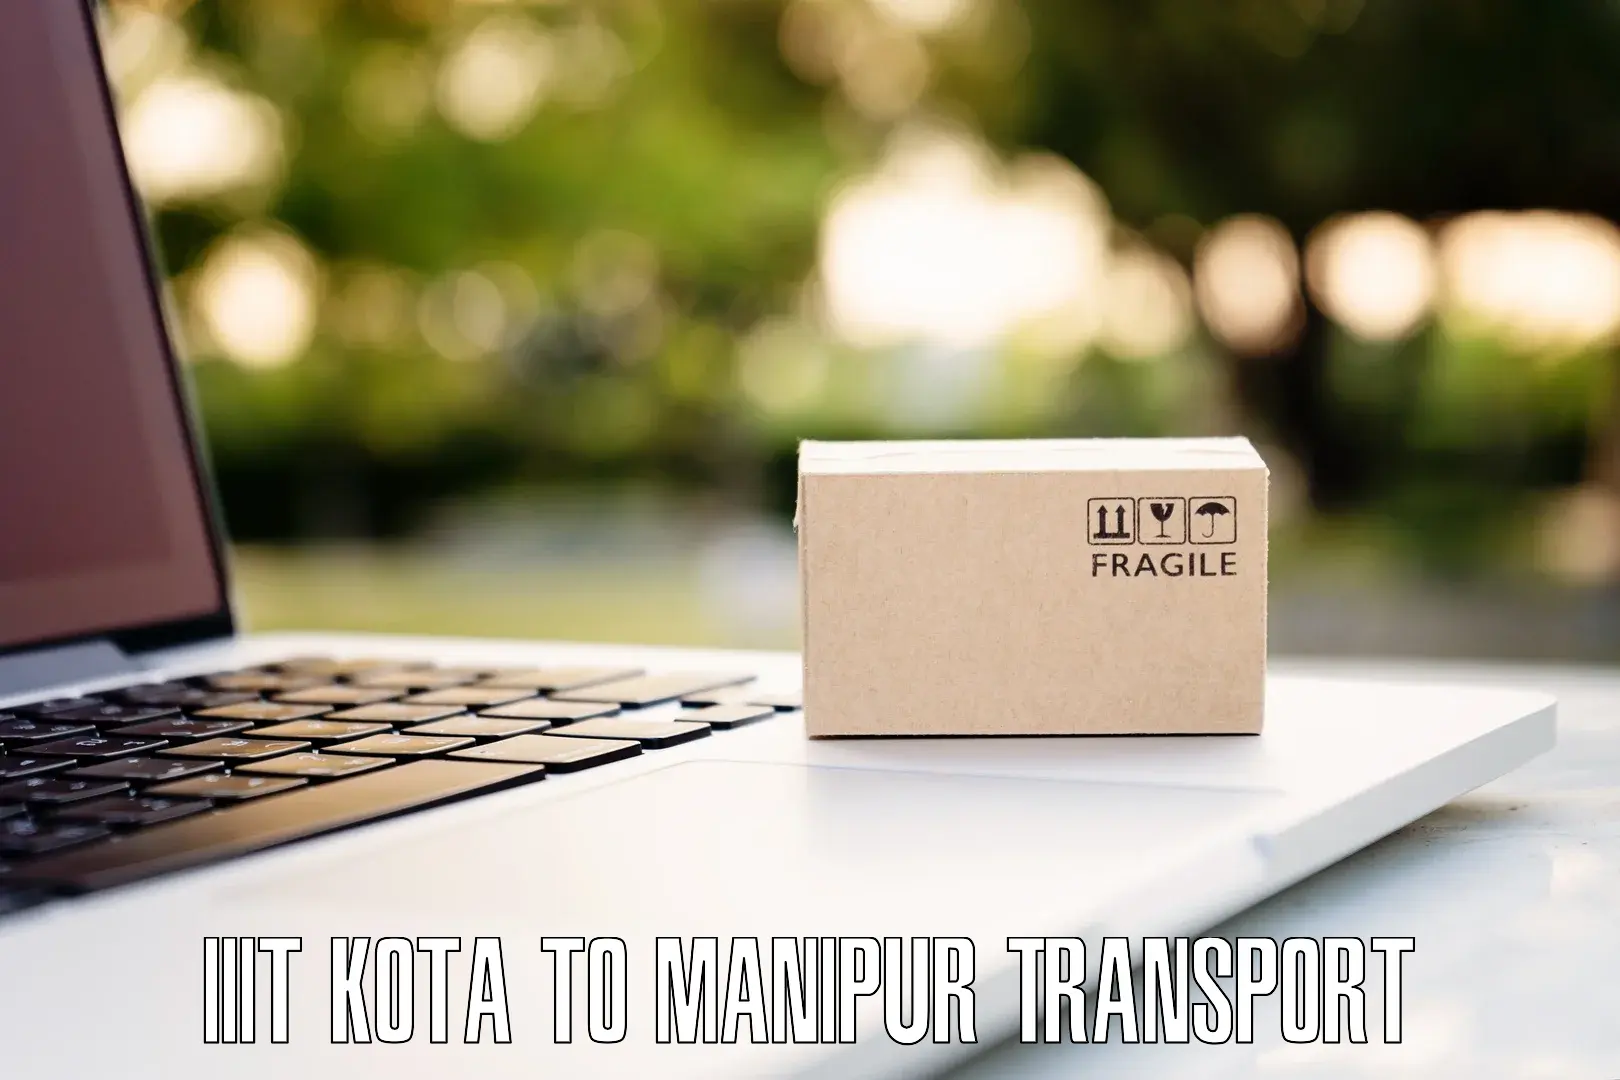 Furniture transport service IIIT Kota to NIT Manipur